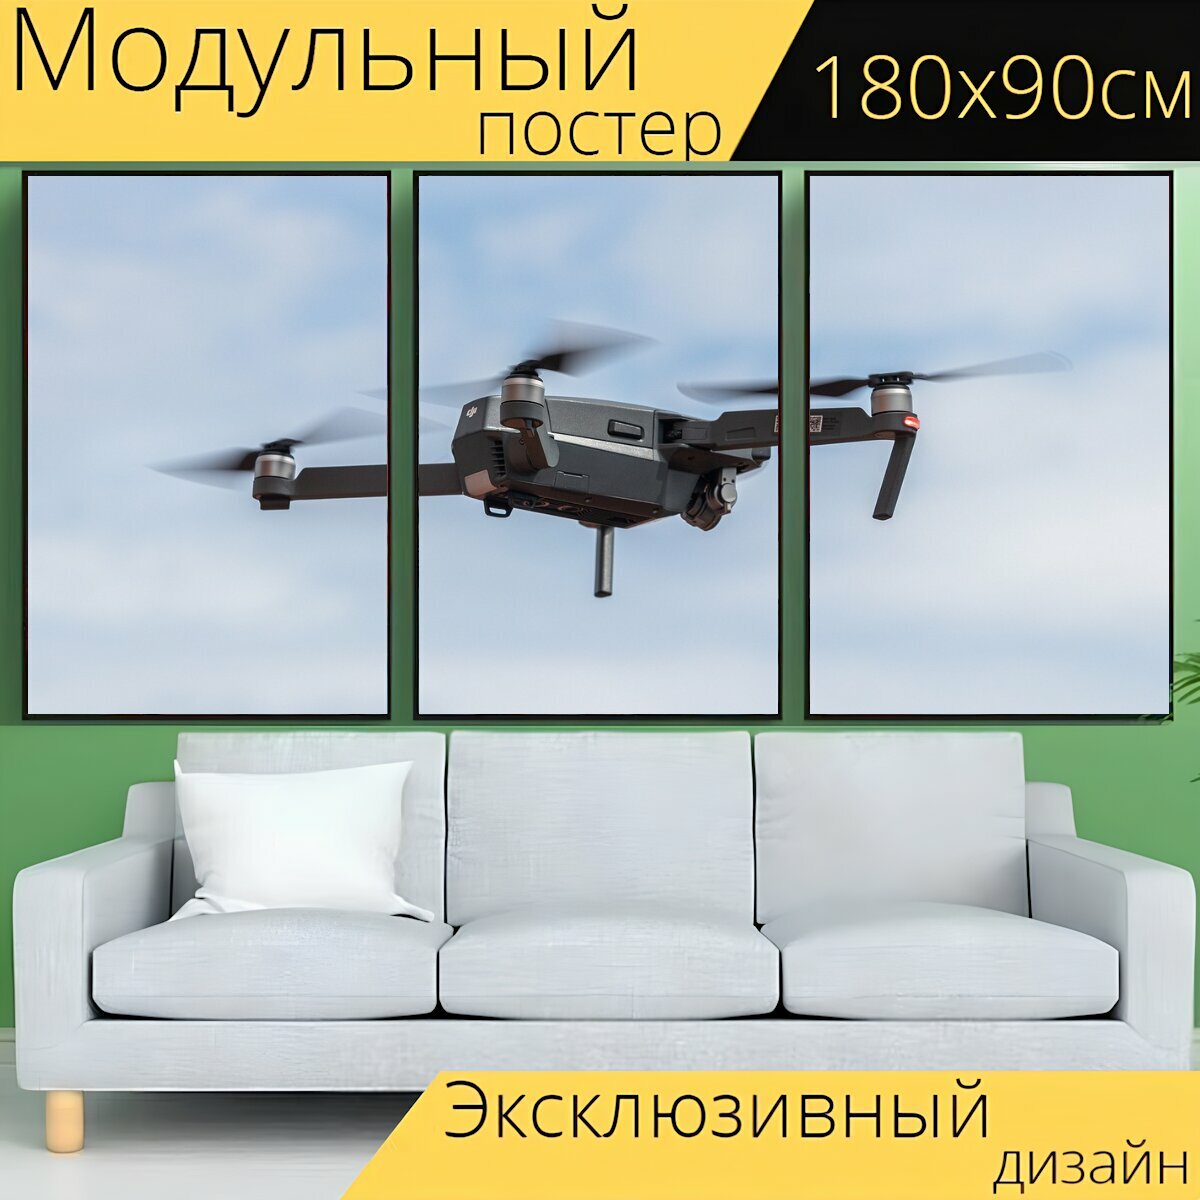 Модульный постер "Дрон, квадрокоптер, камера дрон" 180 x 90 см. для интерьера